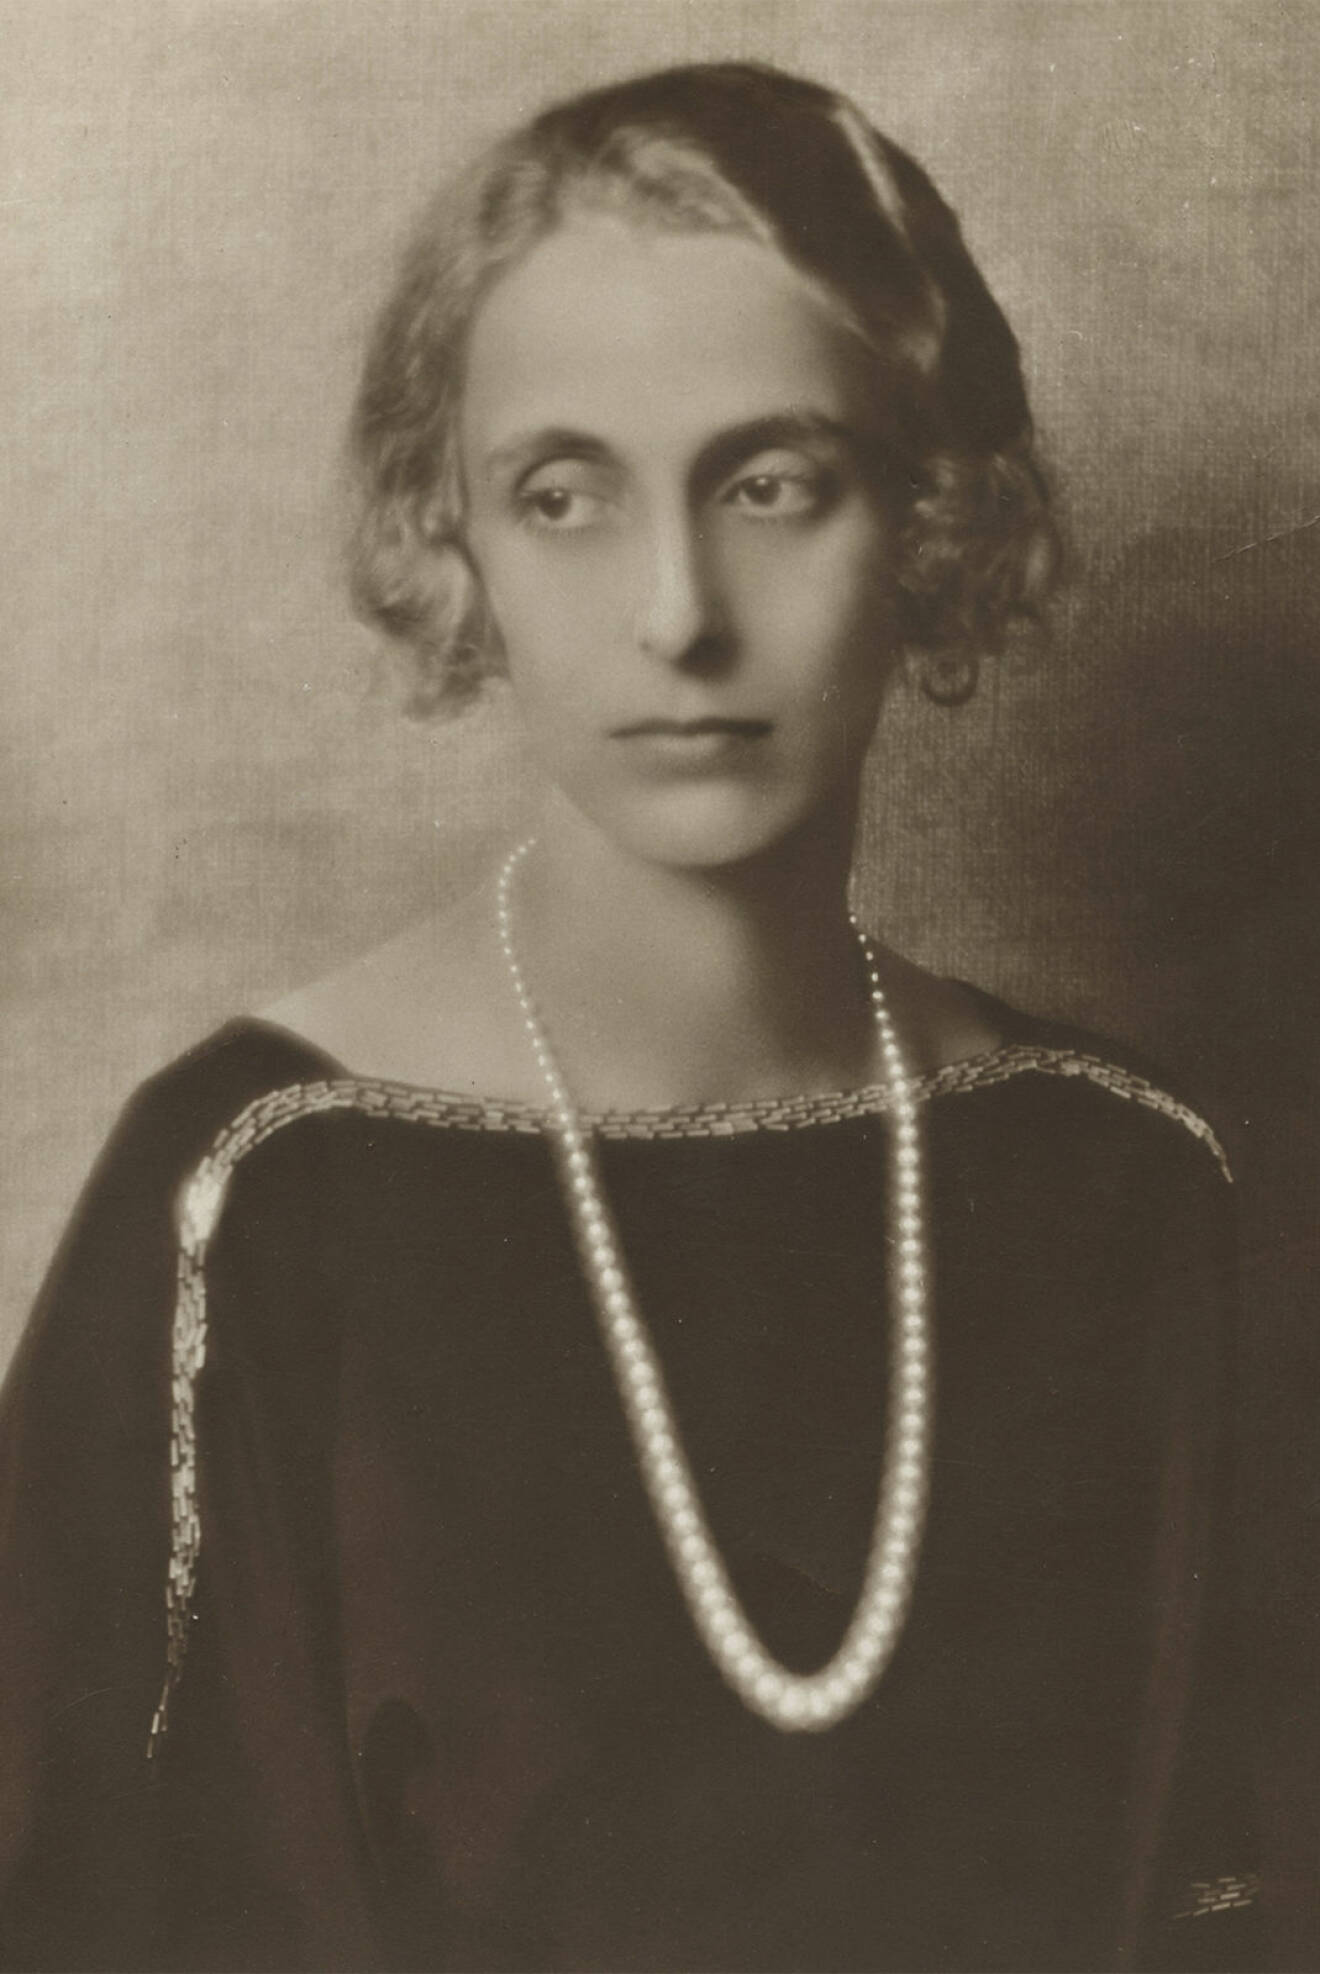 Kronprins Gustav Adolfs trolovade , Lady Louise Mountbatten, sedermera kronprinsessan Louise, porträtt från Harris Picture Agency, 1923.